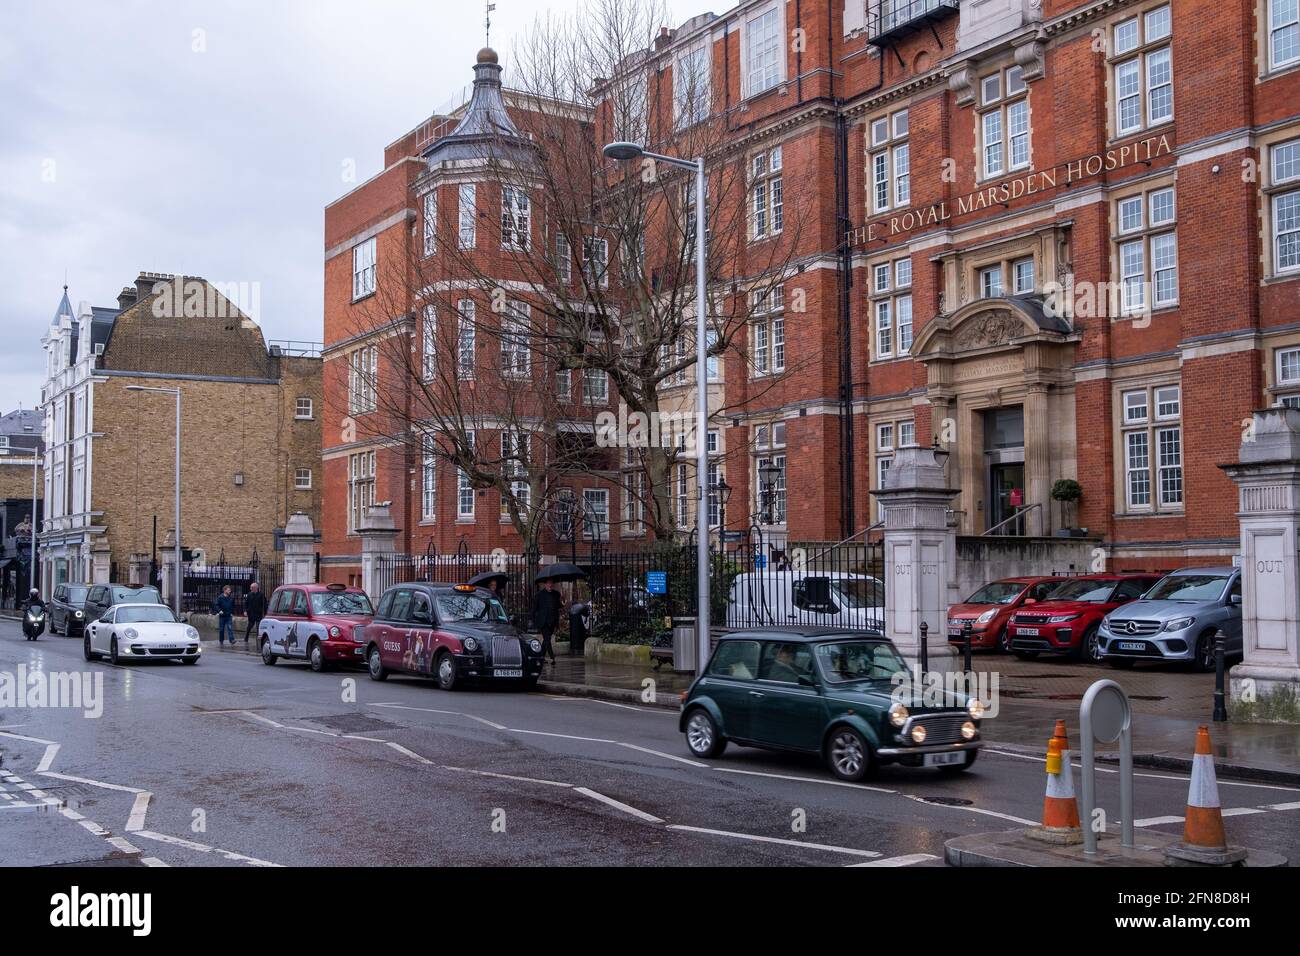 LONDRA - Maggio 2021: Il Royal Marsden Hospital su Fulham Road, una fondazione NHS e ospedale oncologico leader a livello mondiale Foto Stock